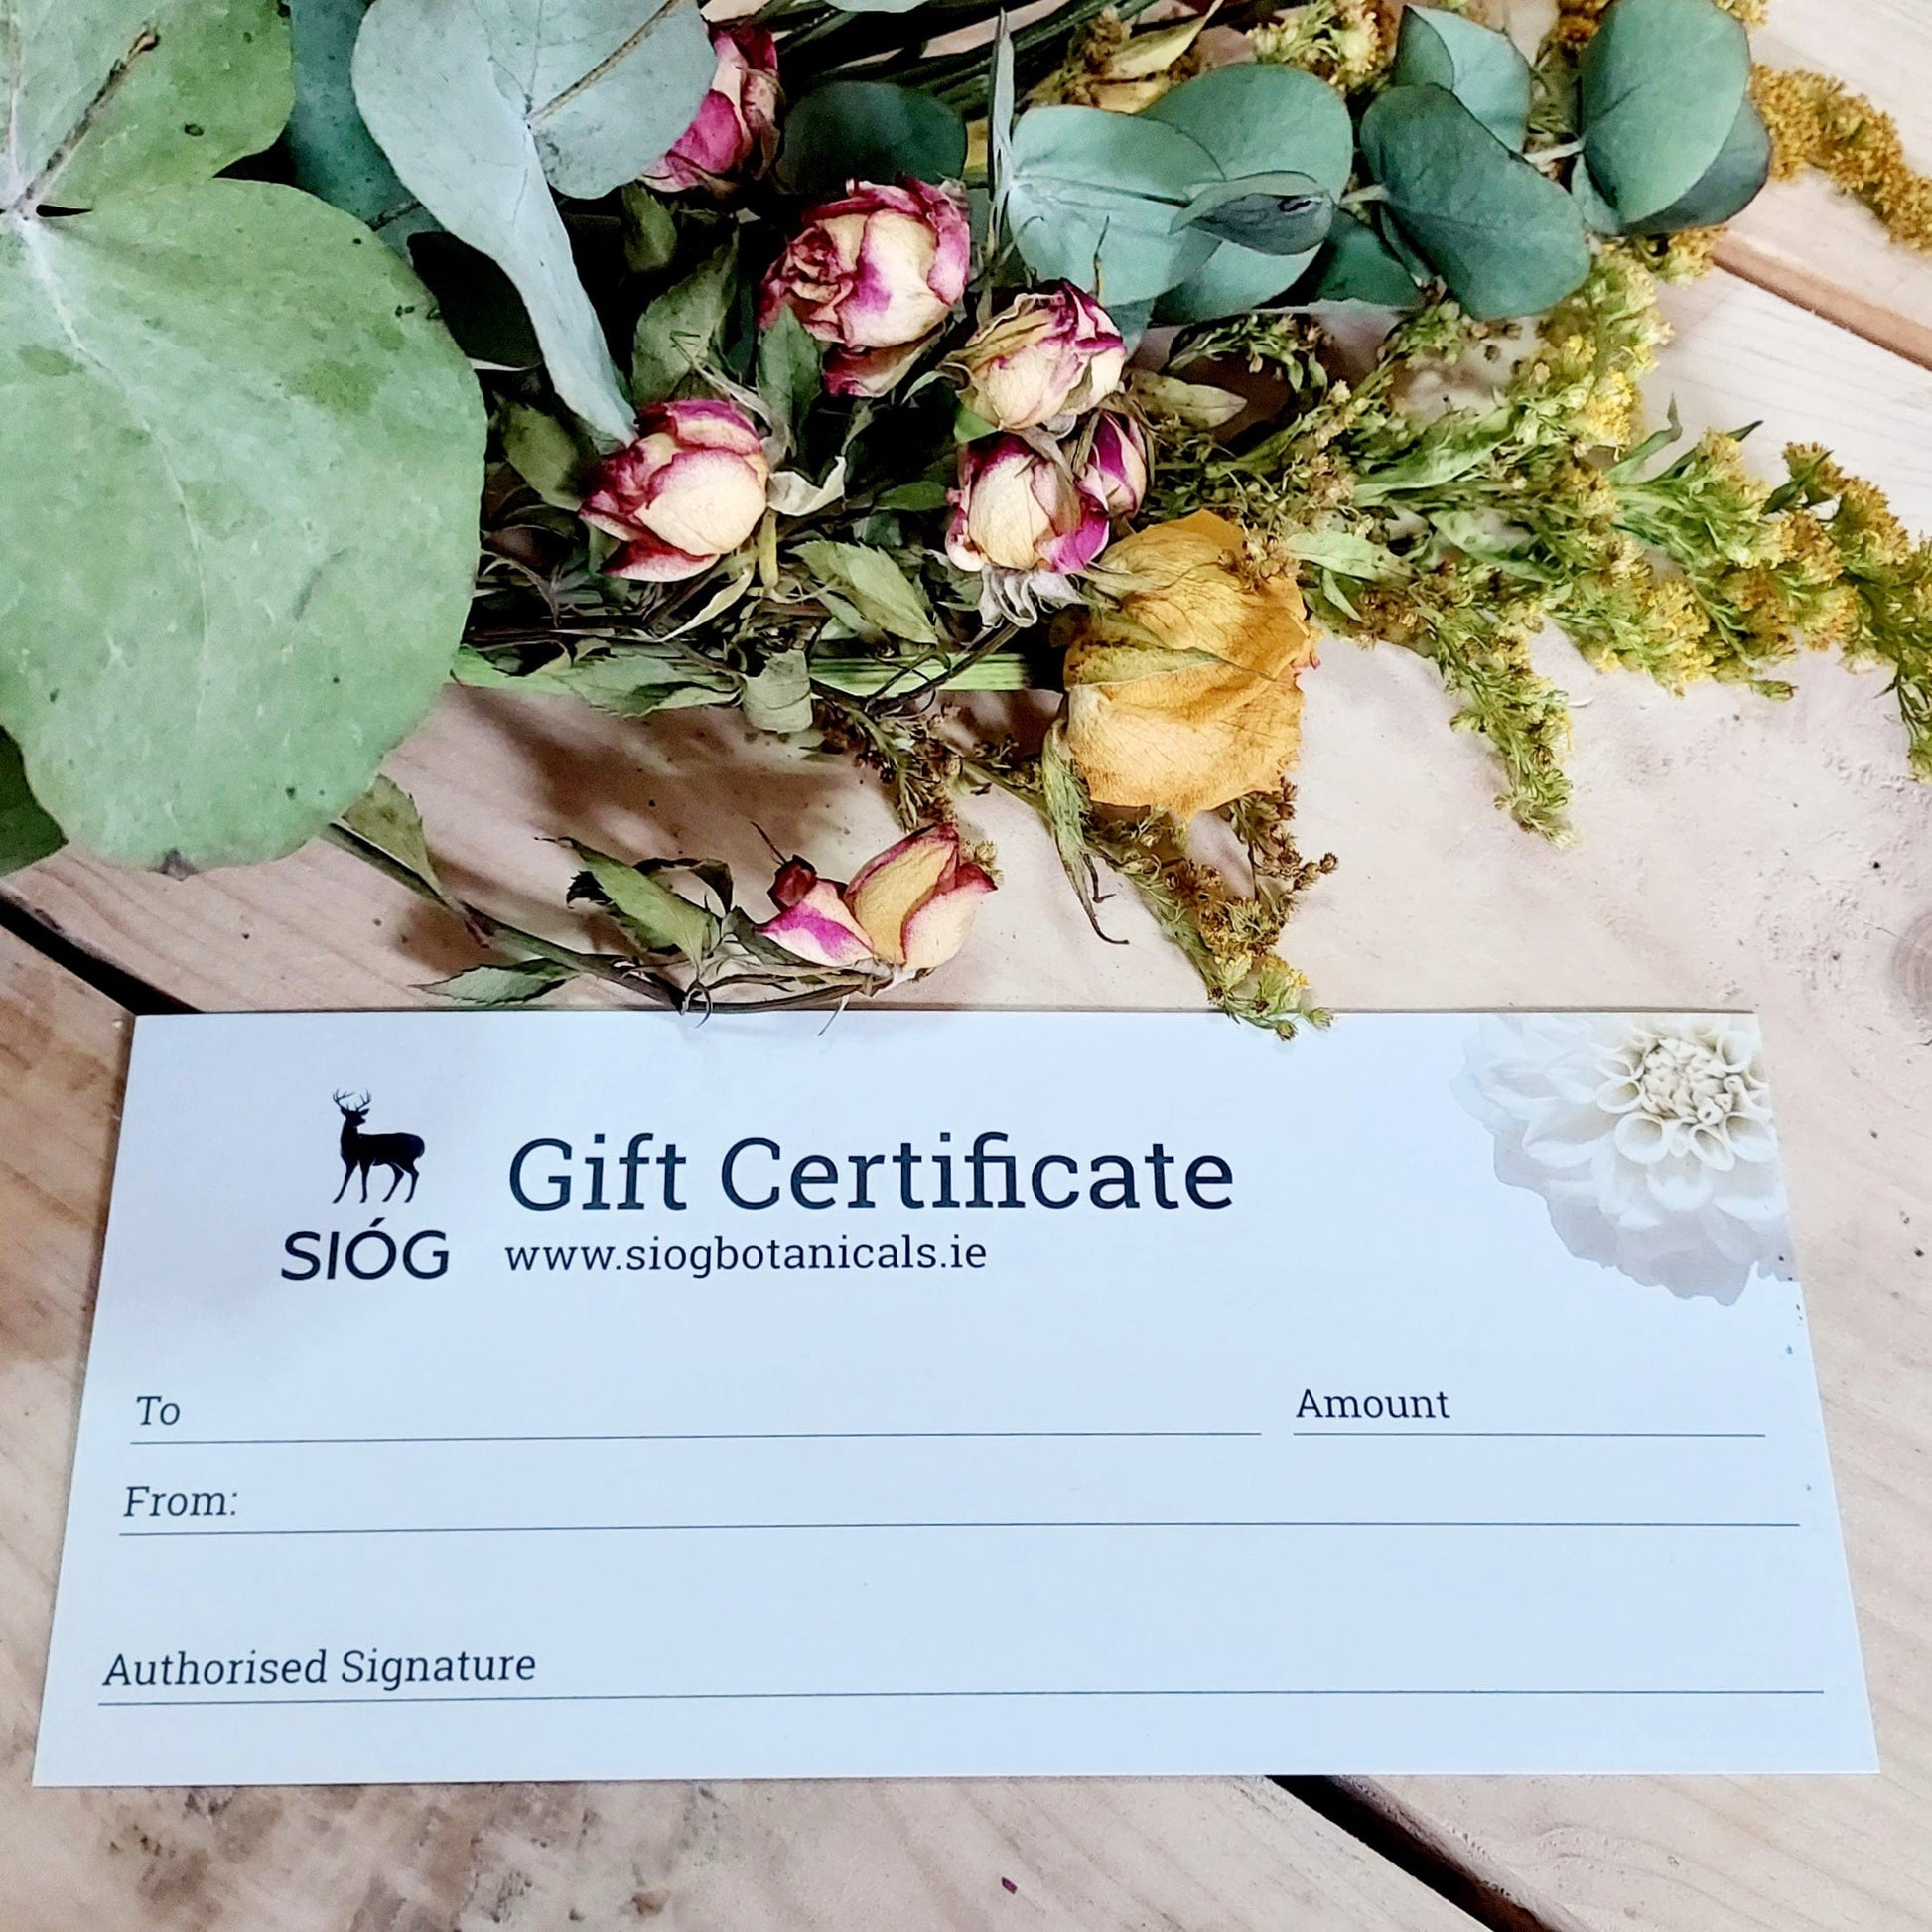 SIÓG Botanicals Gift Cards €25.00 SIÓG Gift Certificate